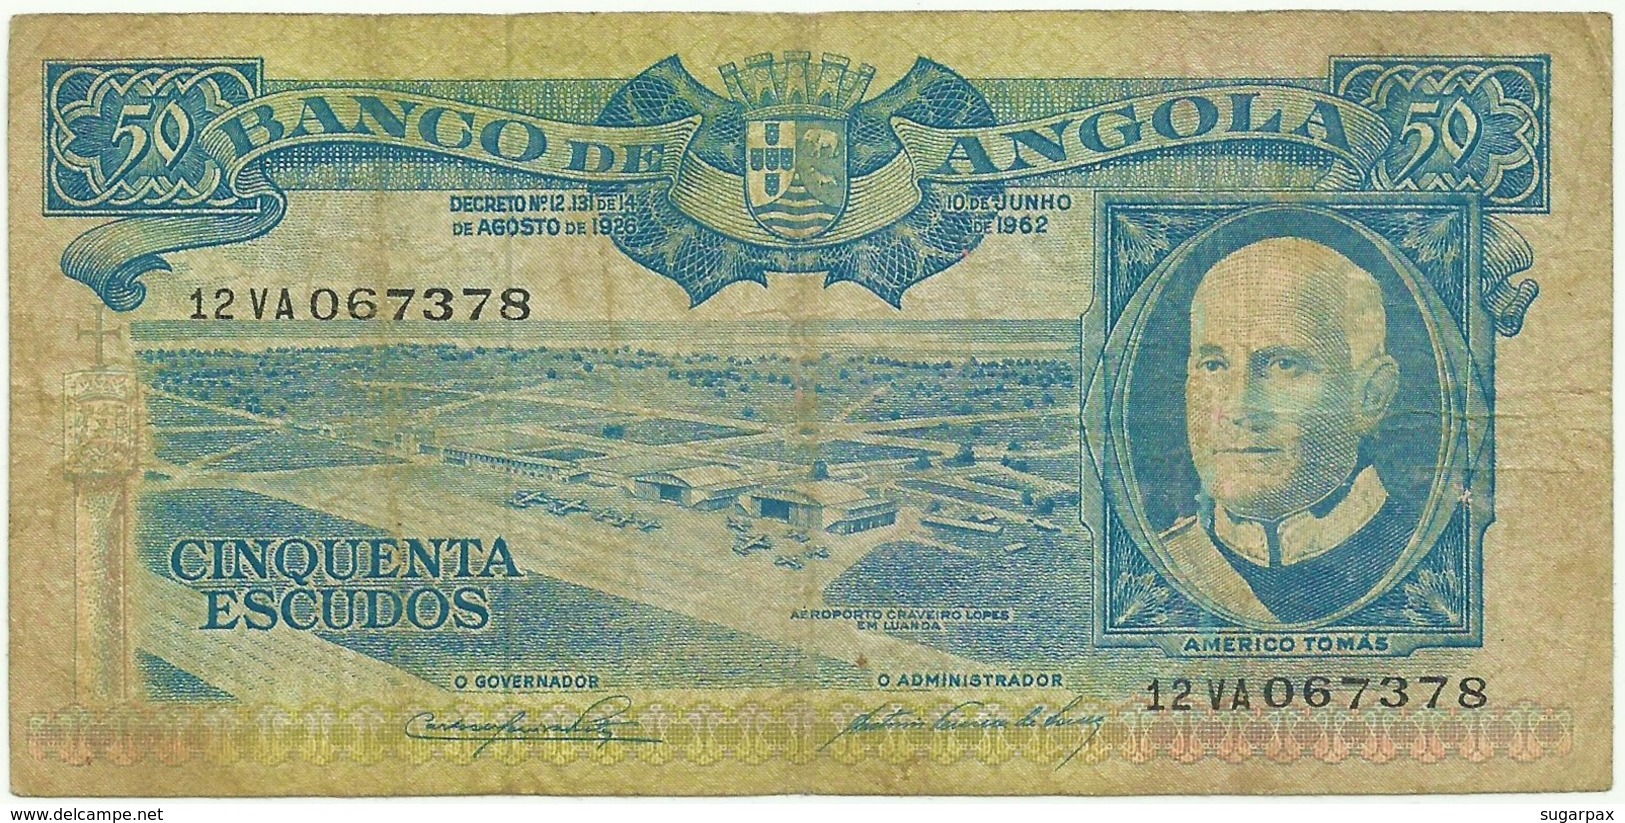 Angola - 50 Escudos - 10.06.1962 - Pick 93 - Série 12 VA - Américo Tomás - PORTUGAL - Angola